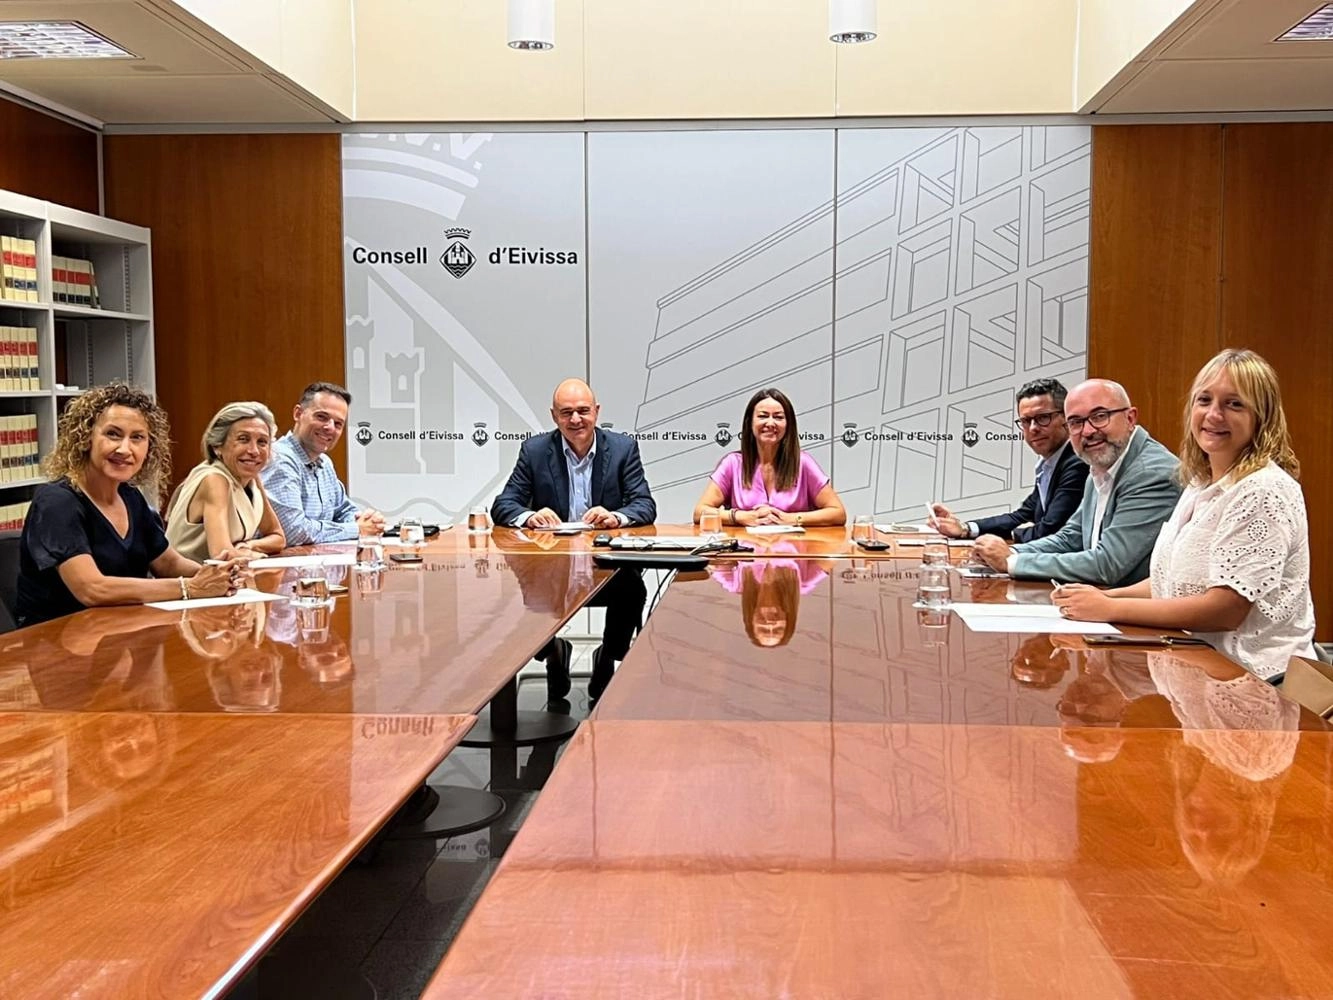 Imagen del artículo La consellera Marta Vidal se compromete a trabajar de la mano de los consells y los ayuntamientos en su visita a Eivissa